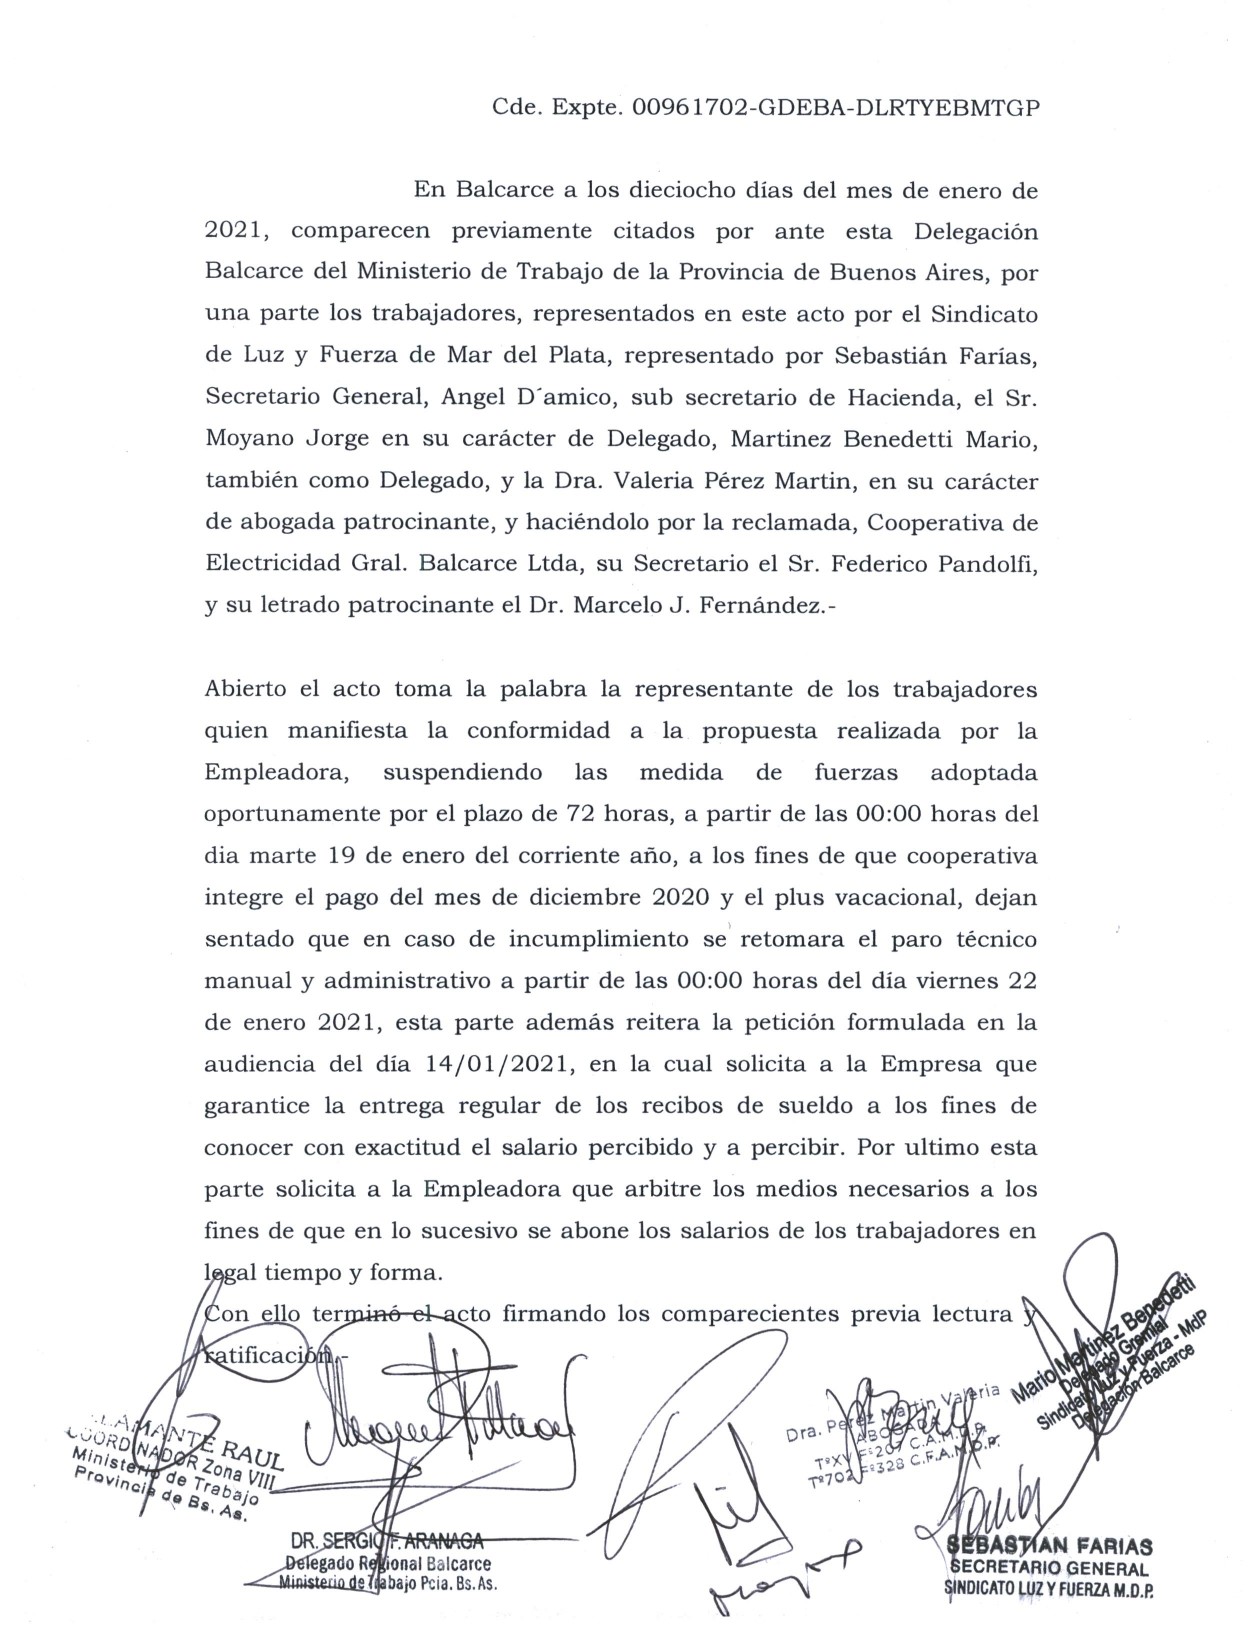 CONFLICTO EN COOPERATIVA DE BALCARCE: SUSPENSIÓN DE MEDIDAS DE FUERZA POR 72hs